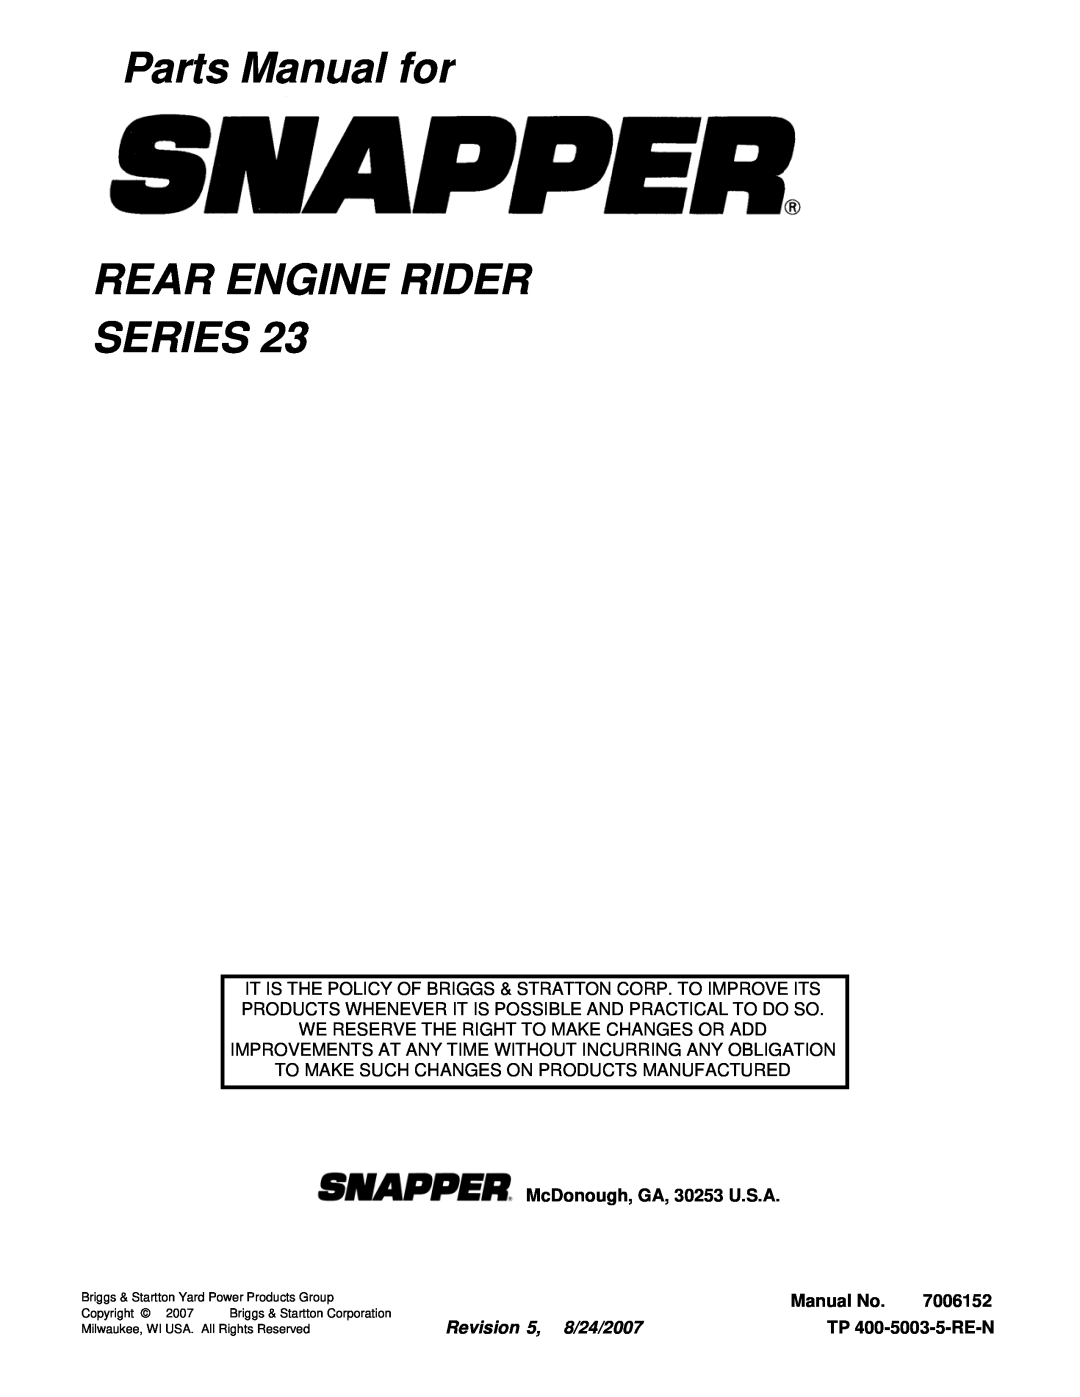 Snapper 281023BVE manual Parts Manual for REAR ENGINE RIDER SERIES, McDonough, GA, 30253 U.S.A, Manual No, 7006152 